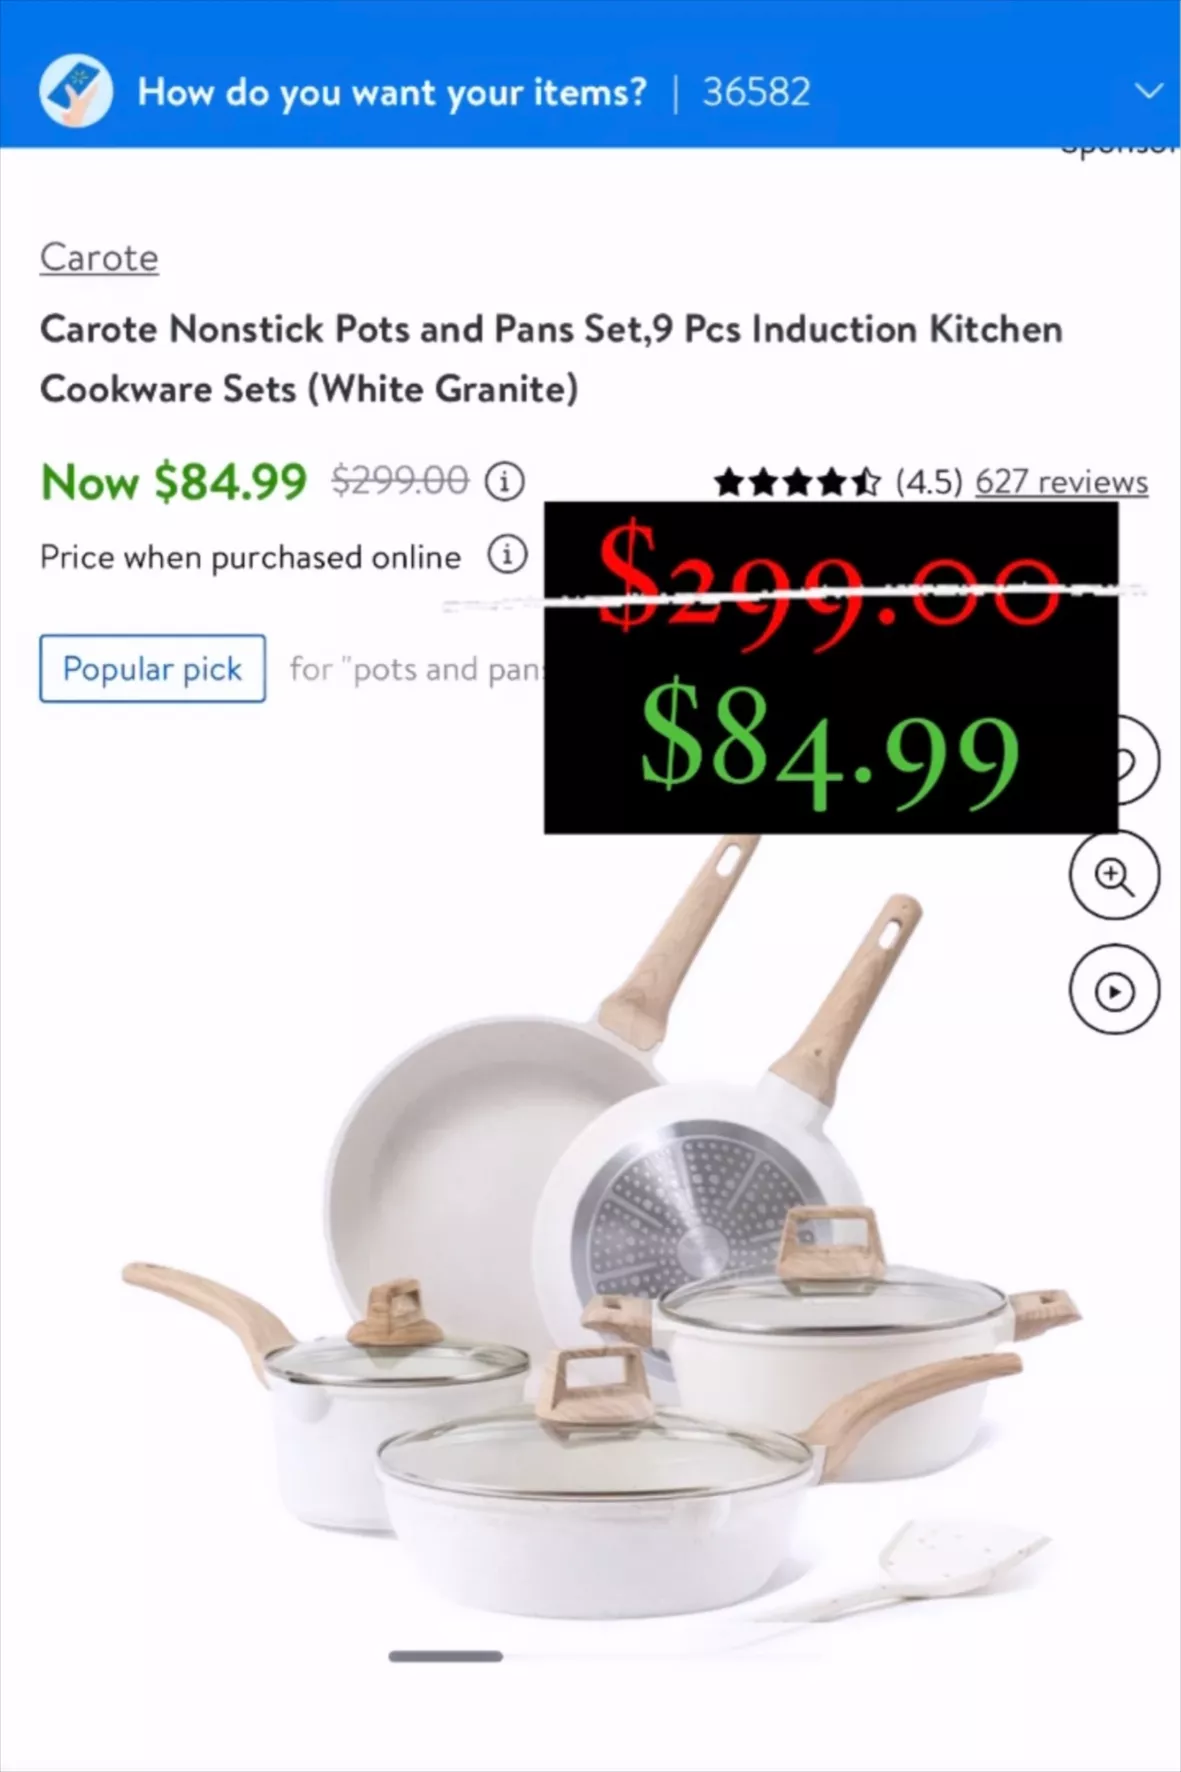 Carote Nonstick Cookware Sets,9 Pcs Granite Non Stick Pots and